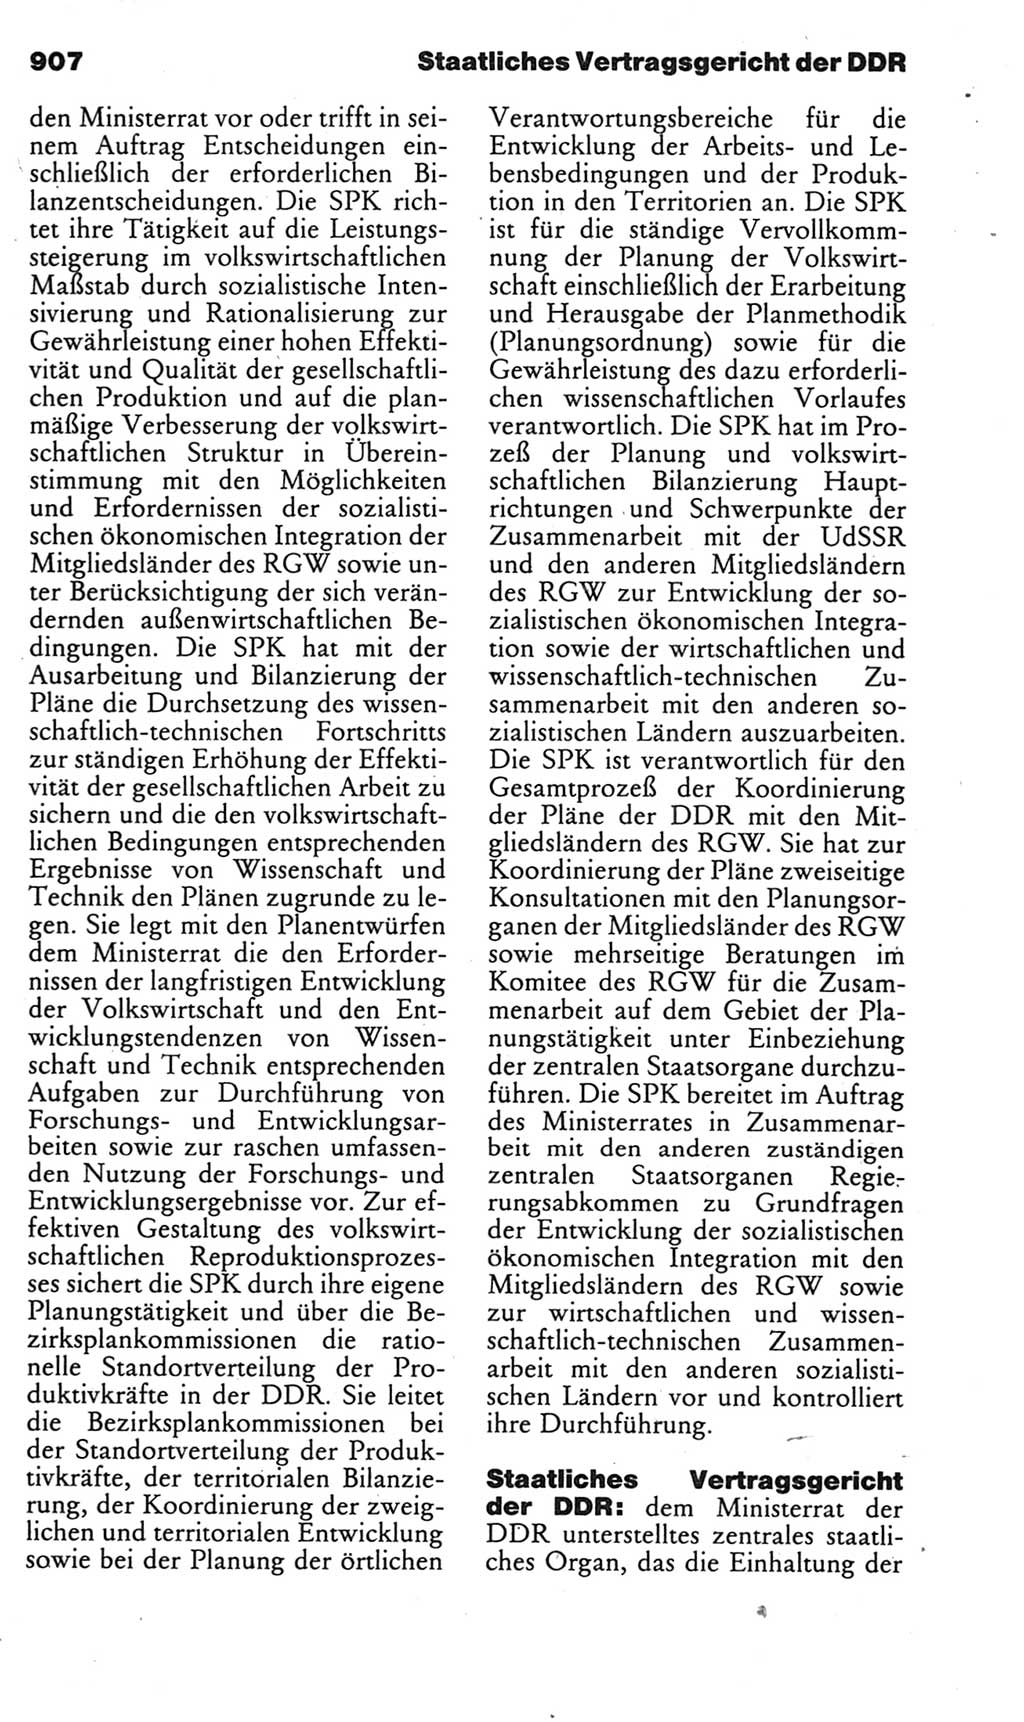 Kleines politisches Wörterbuch [Deutsche Demokratische Republik (DDR)] 1985, Seite 907 (Kl. pol. Wb. DDR 1985, S. 907)